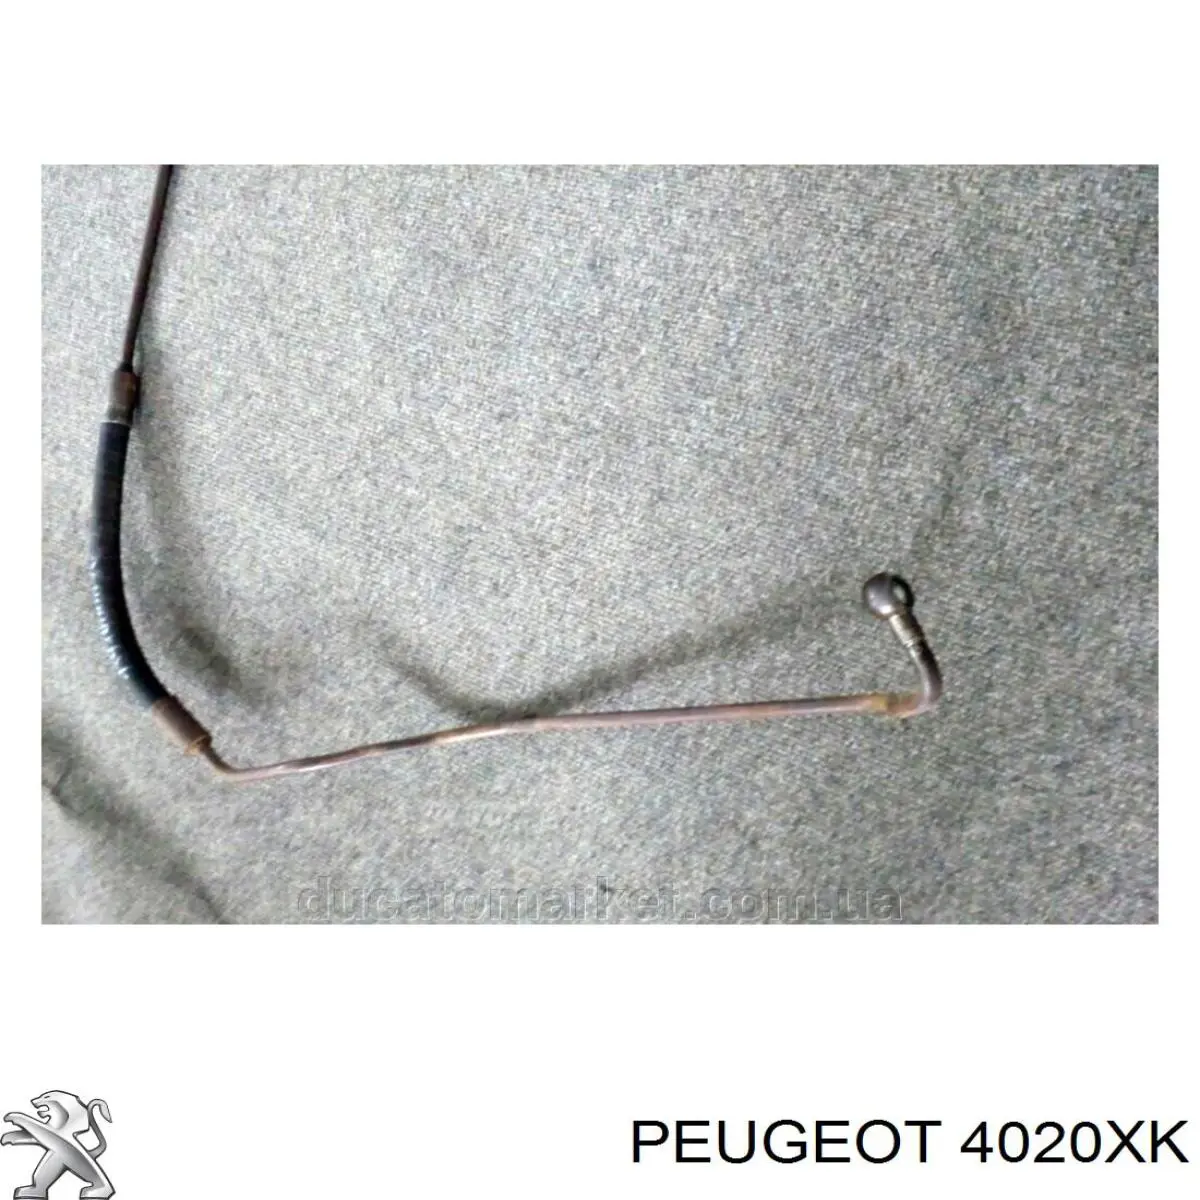 4020XK Peugeot/Citroen manguera de alta presion de direccion, hidráulica